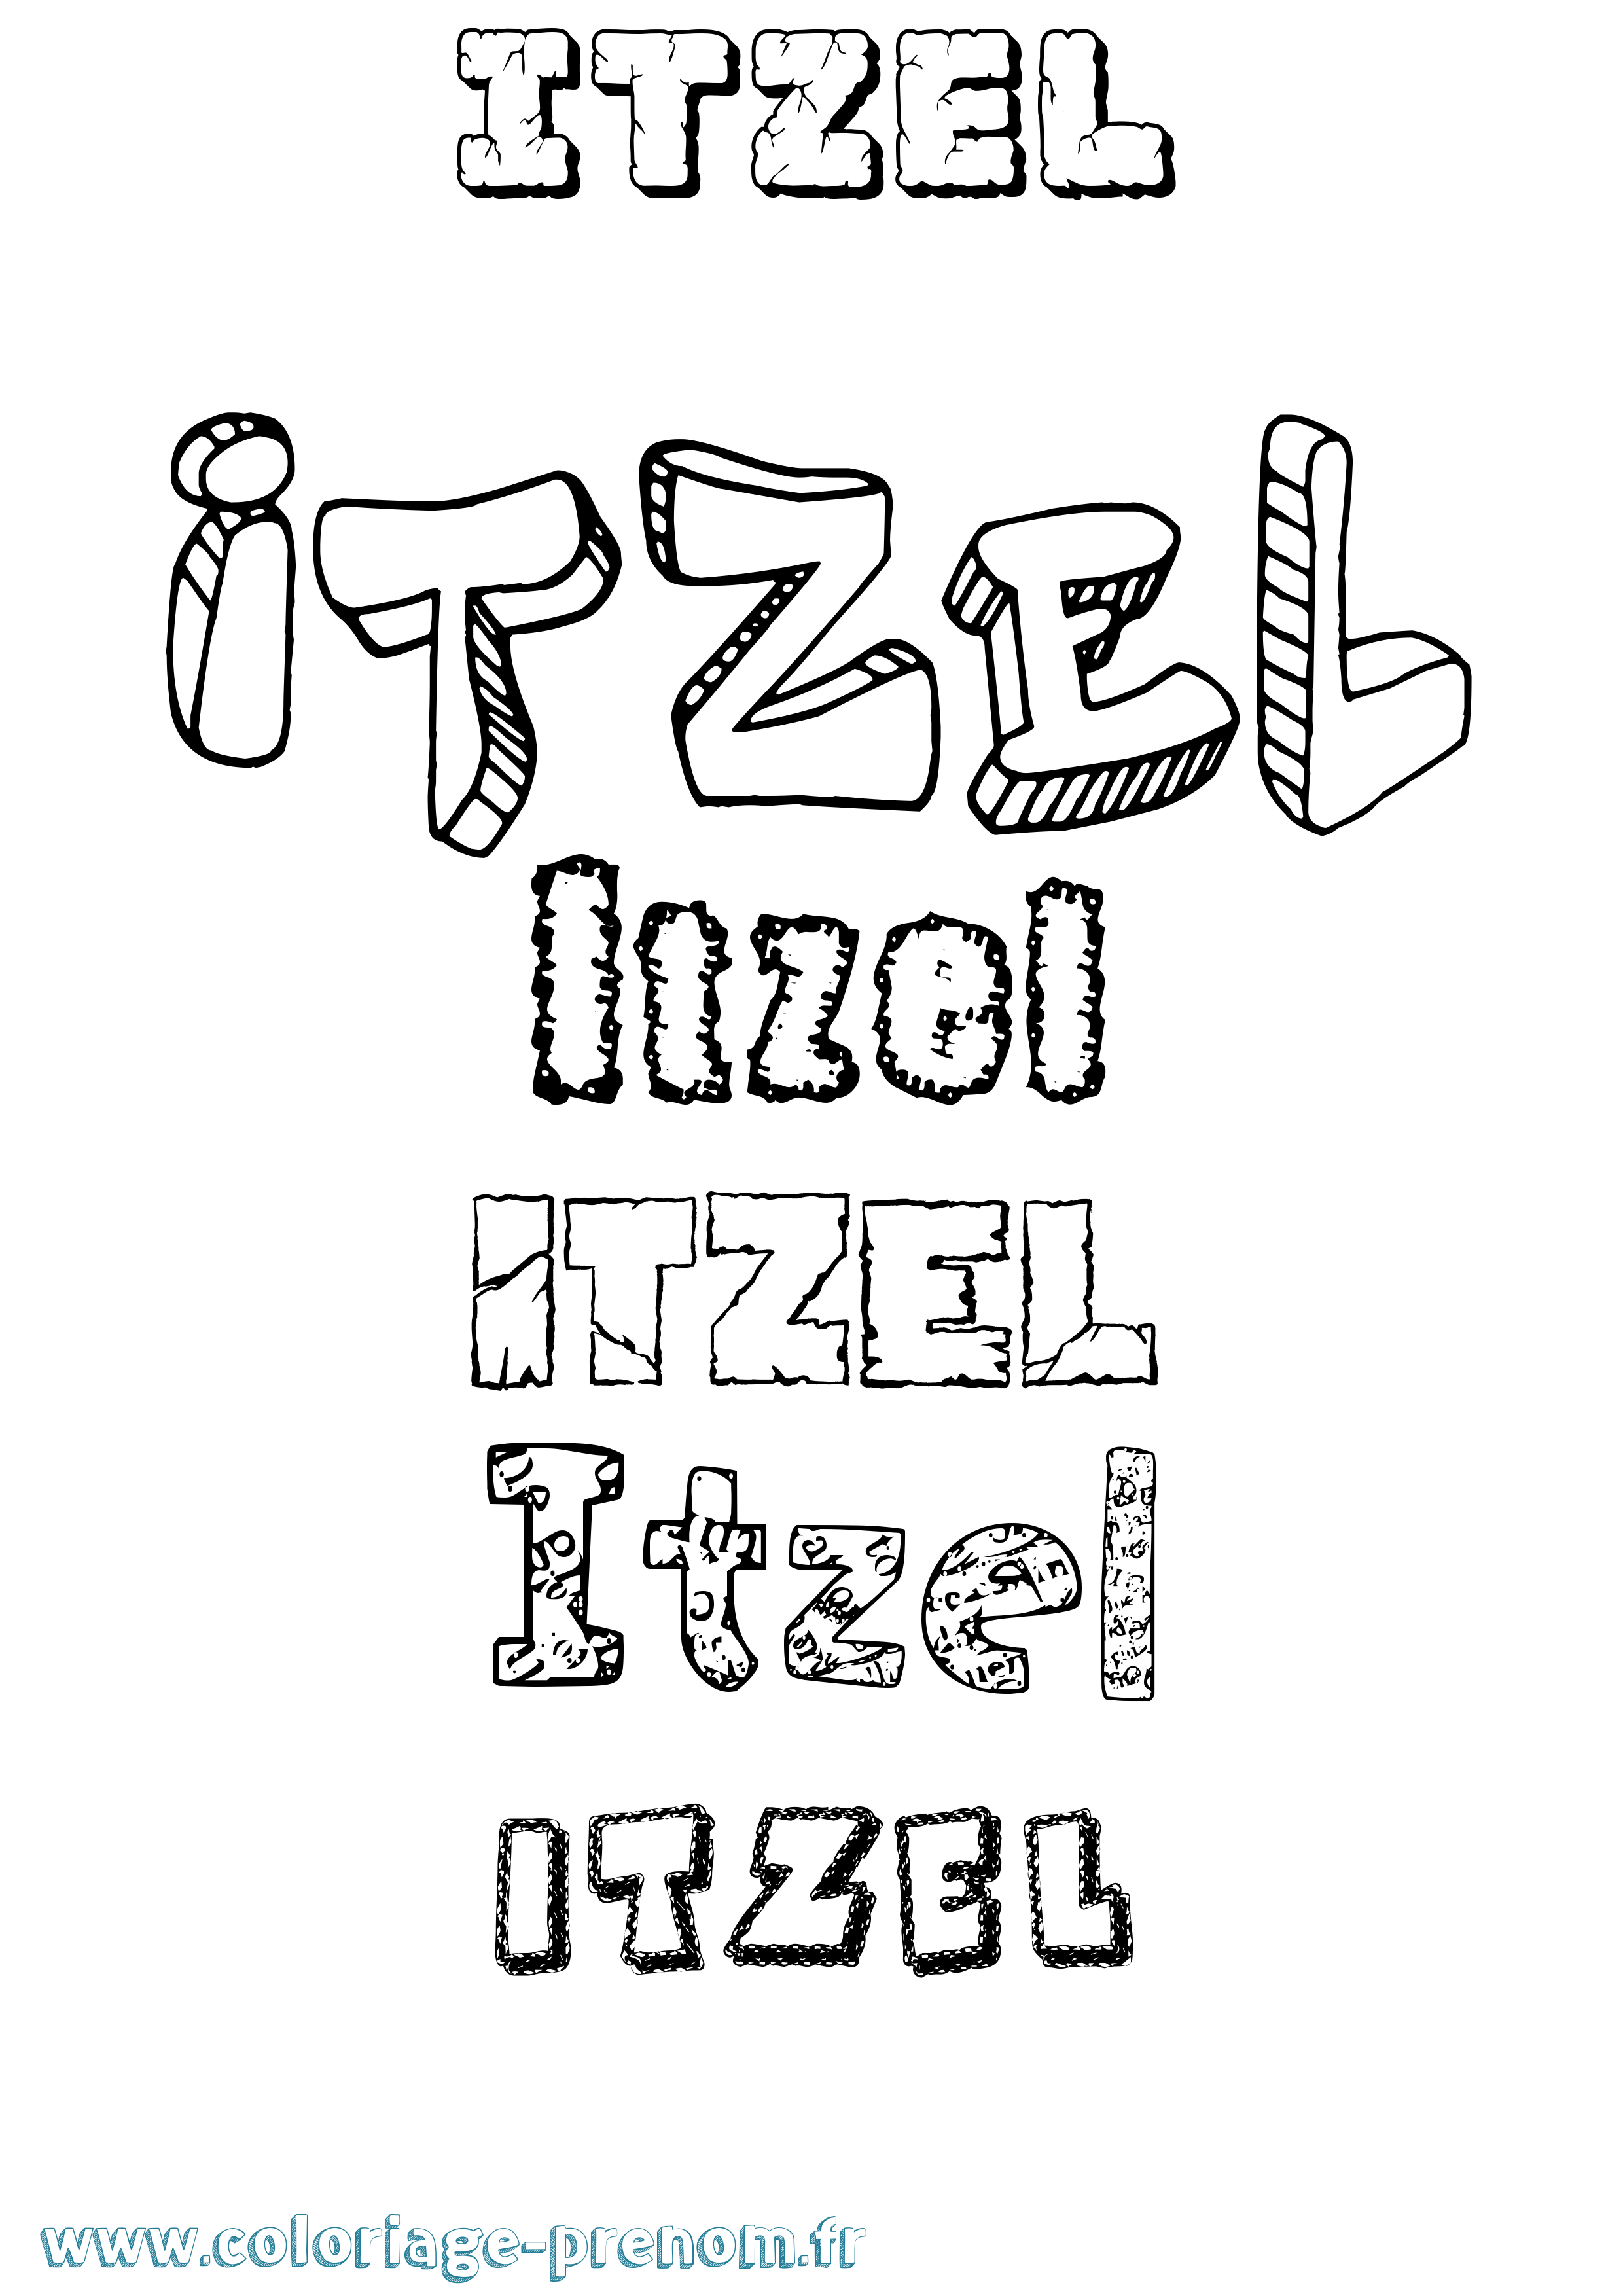 Coloriage prénom Itzel Destructuré